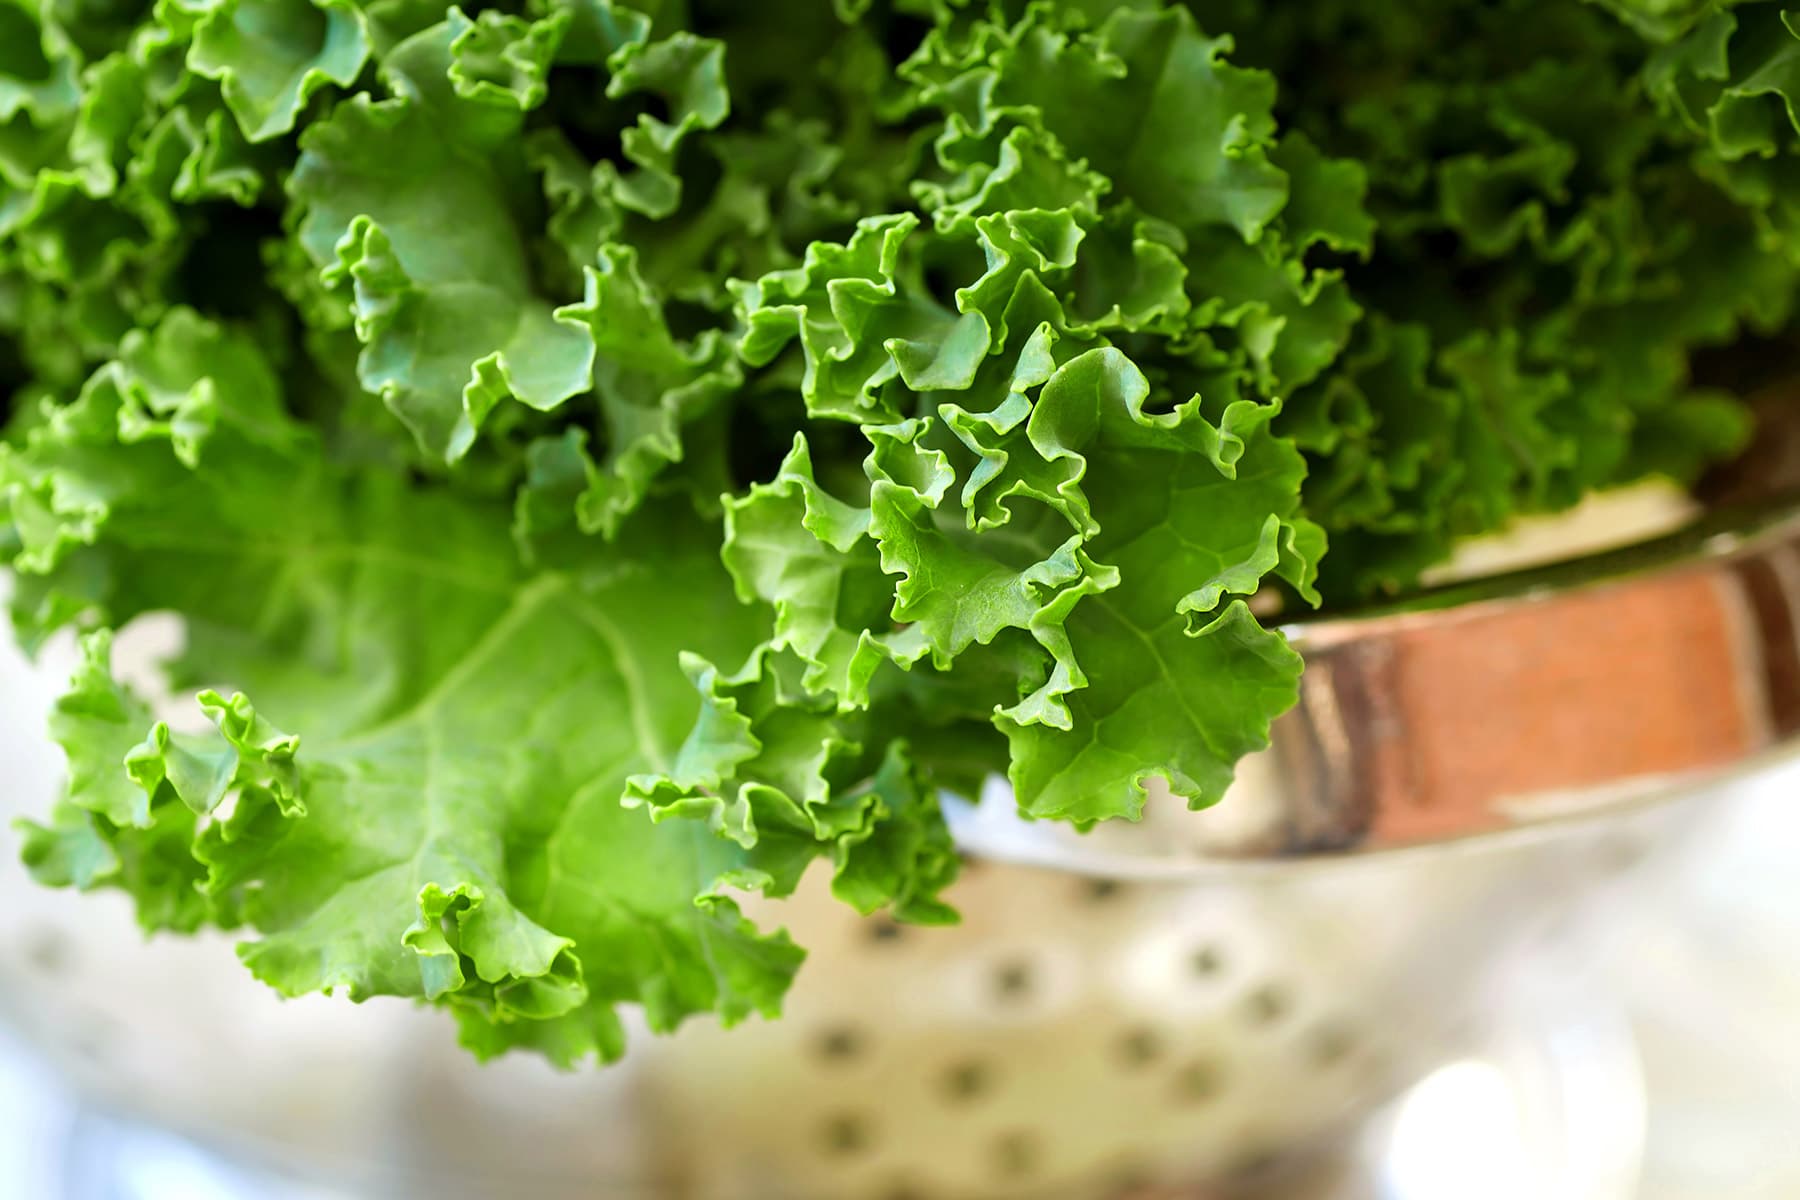 photo of fresh kale